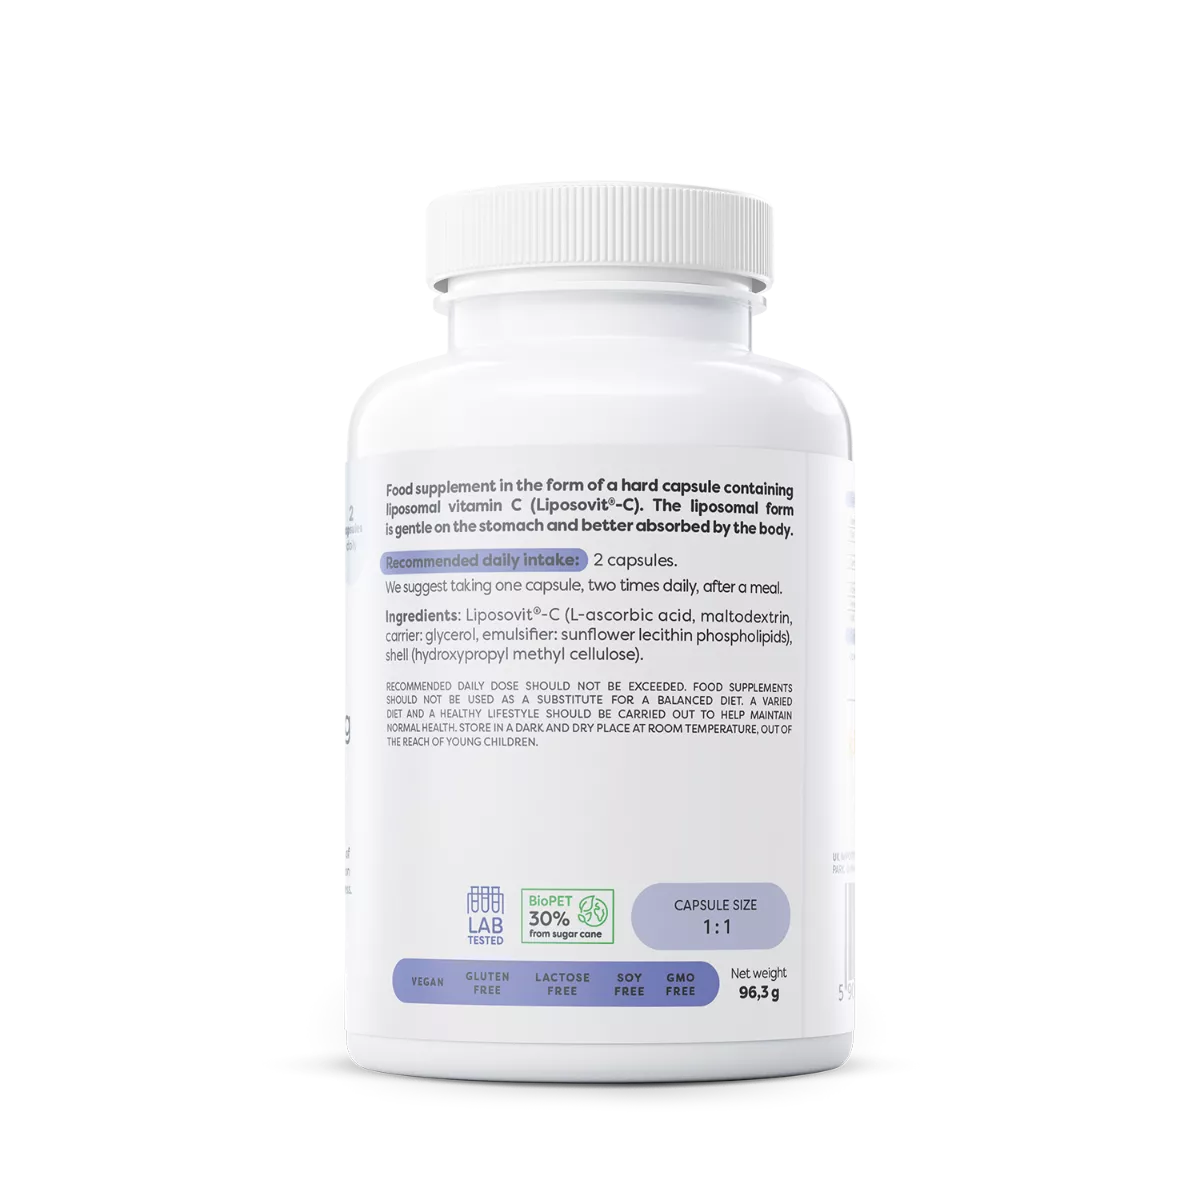 Liposomal Vitamin C 1000mg - Osavi